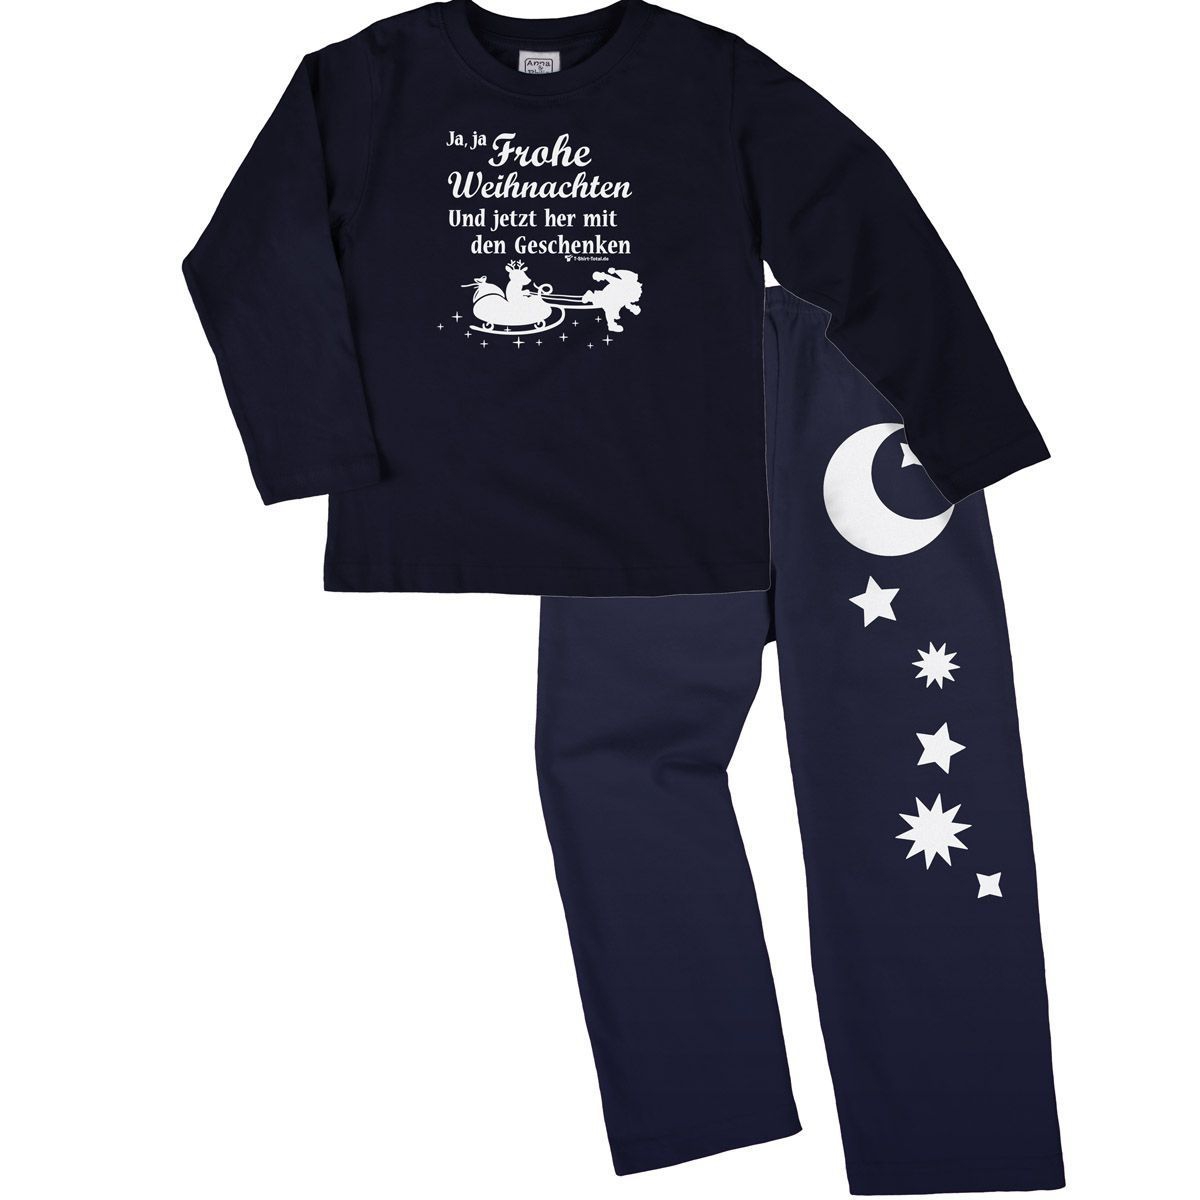 Ja ja Frohe Weihnachten Pyjama Set navy / navy 92